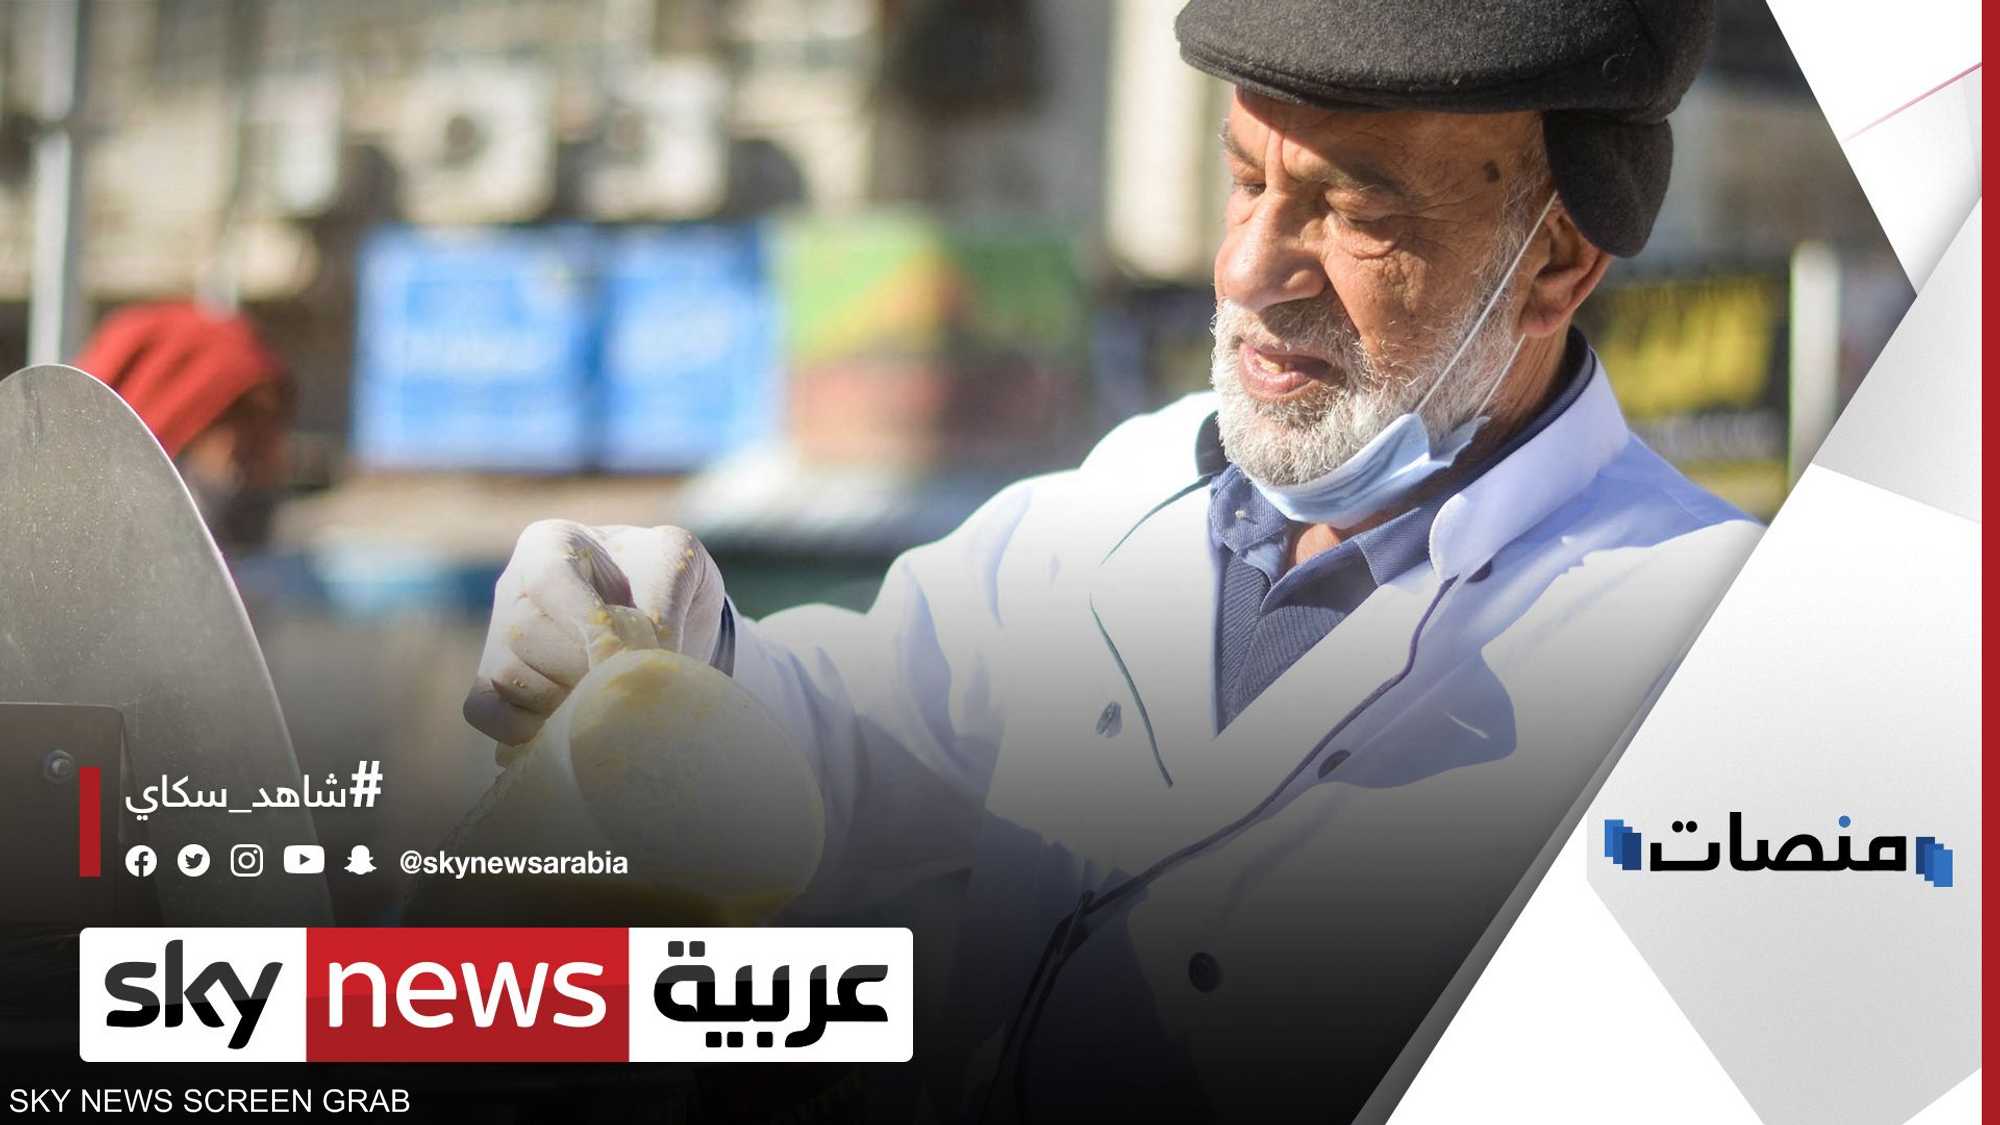 مسن يوزع حساء العدس مجانا في الأردن لمحاربة البرد